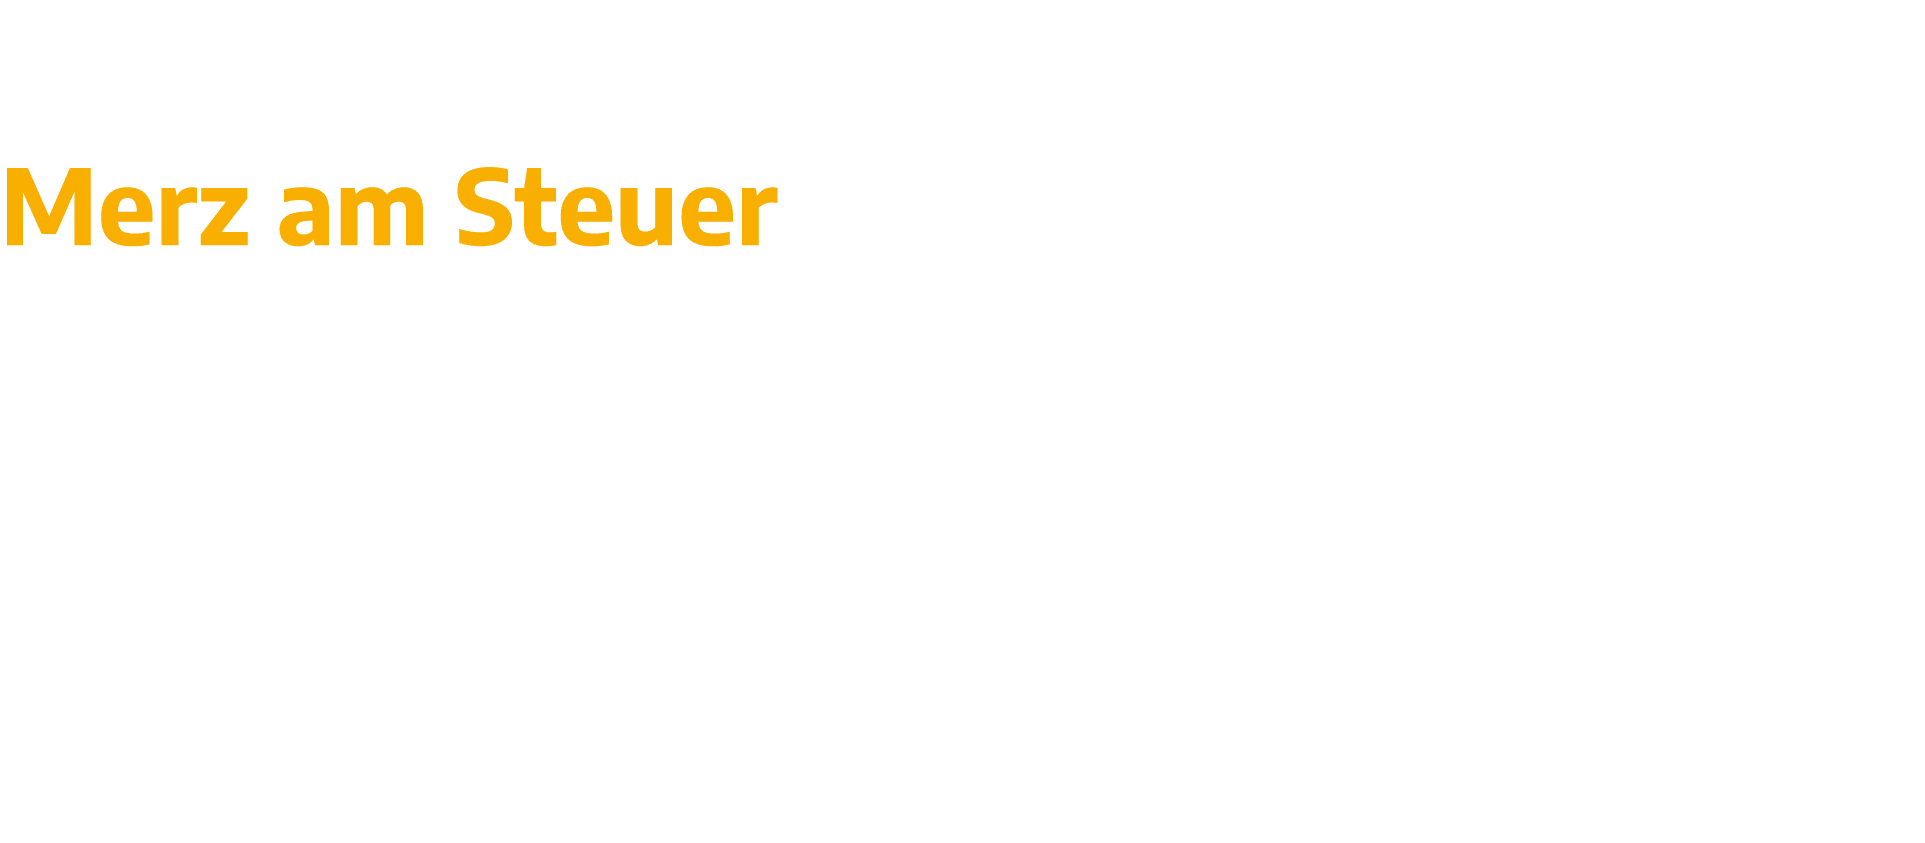 2   20 Merz am Steuer Friedrich Merz schafft es auf den Pilotensitz der CDU-Zeitmaschine  Geht s jetzt politisch zurü   